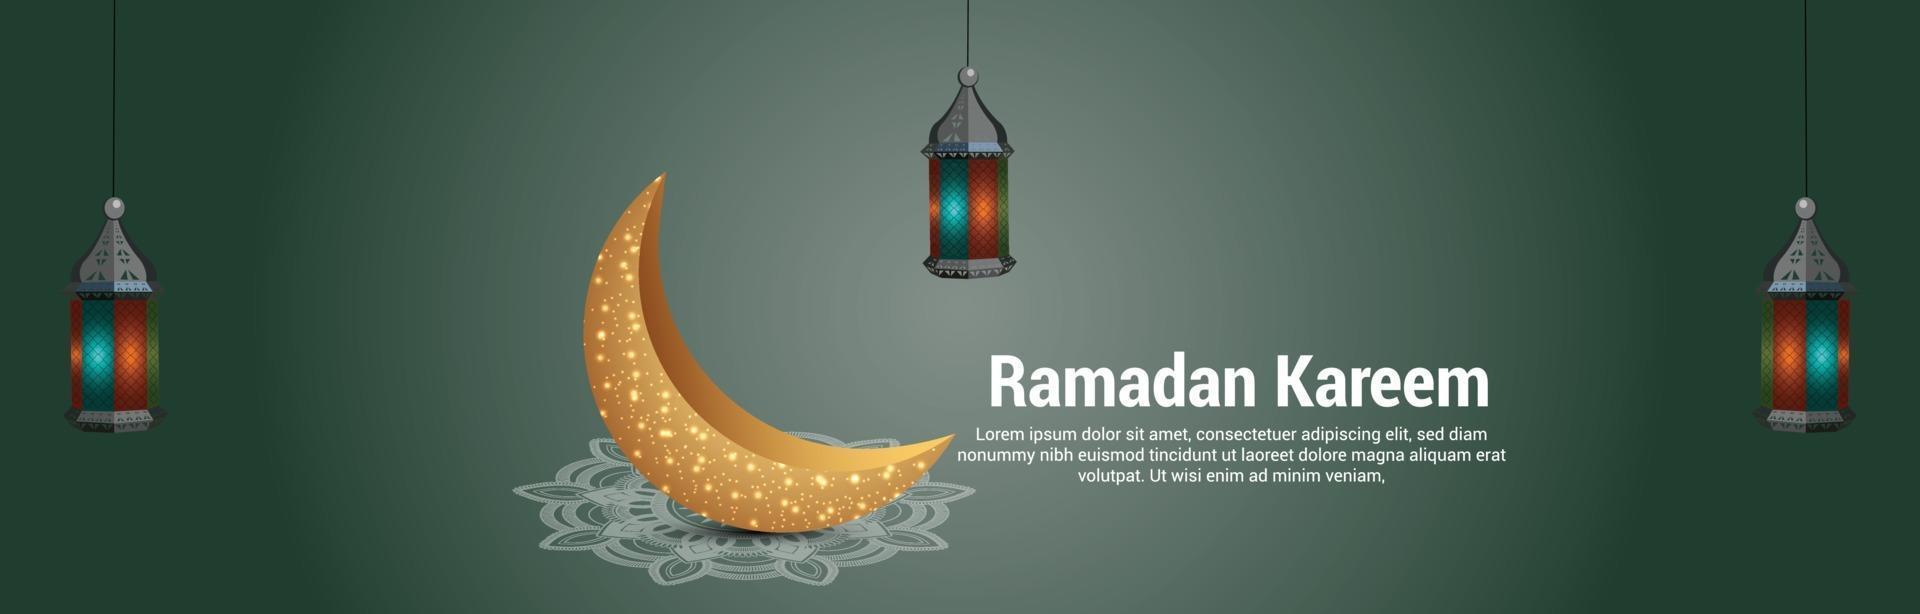 ramadan kareem ou eid mubarakbannière ou en-tête de lune dorée vecteur